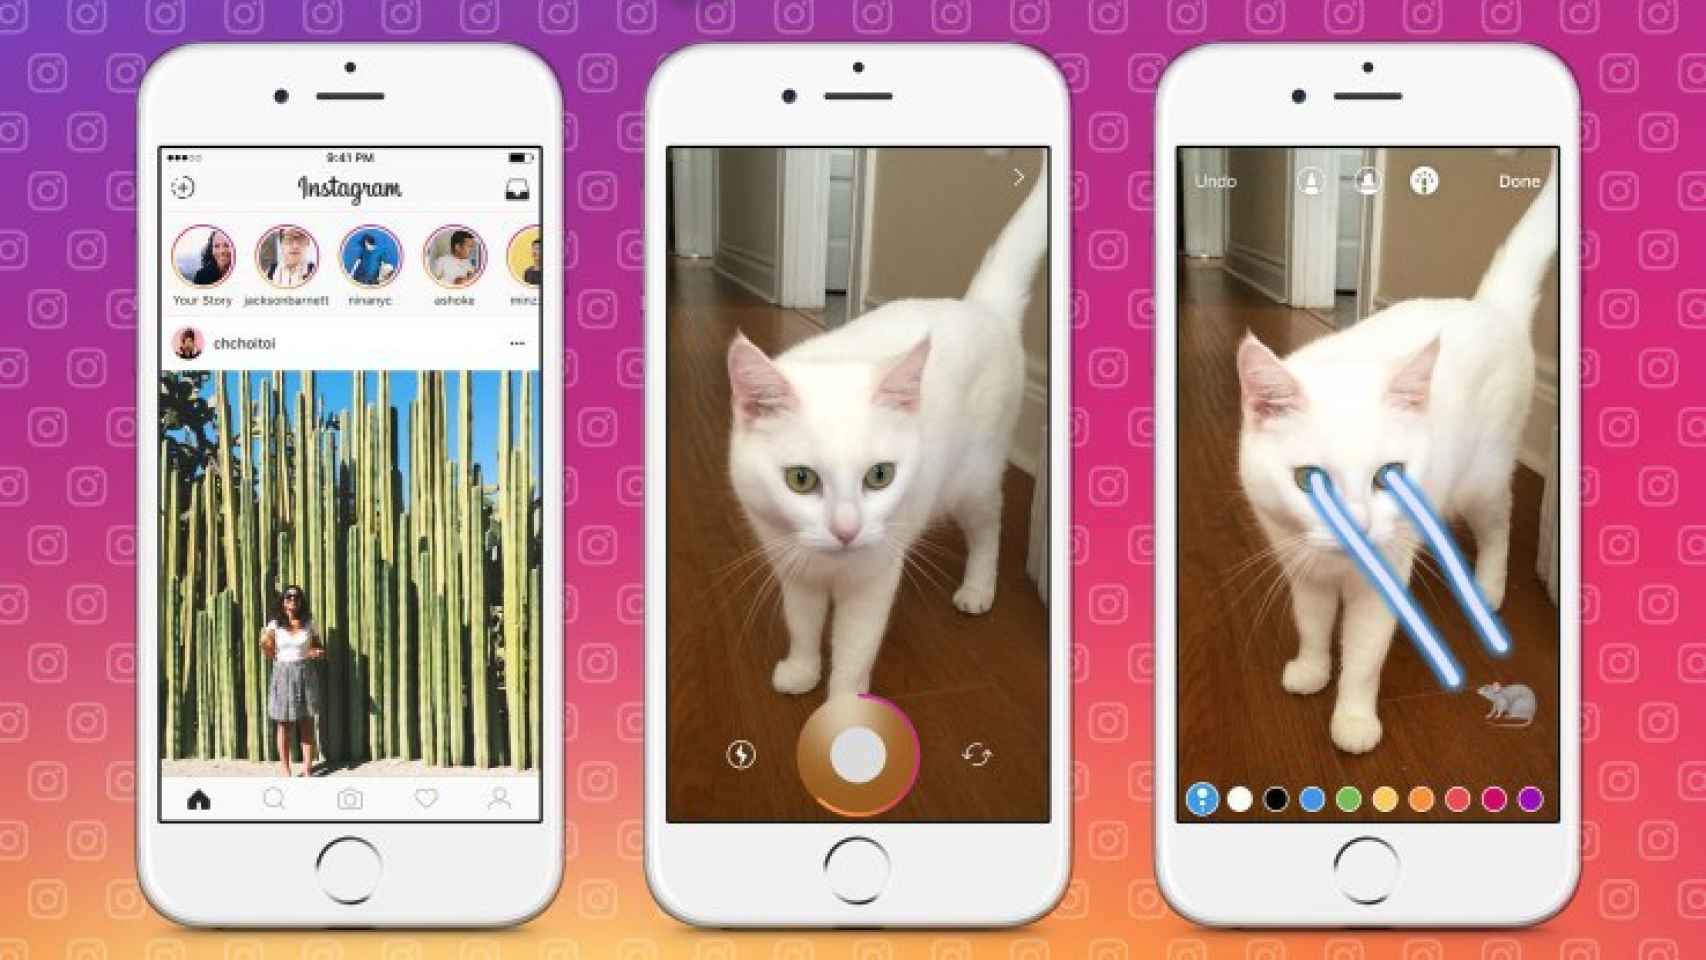 Interfaz de Instagram copiando a Snapchat